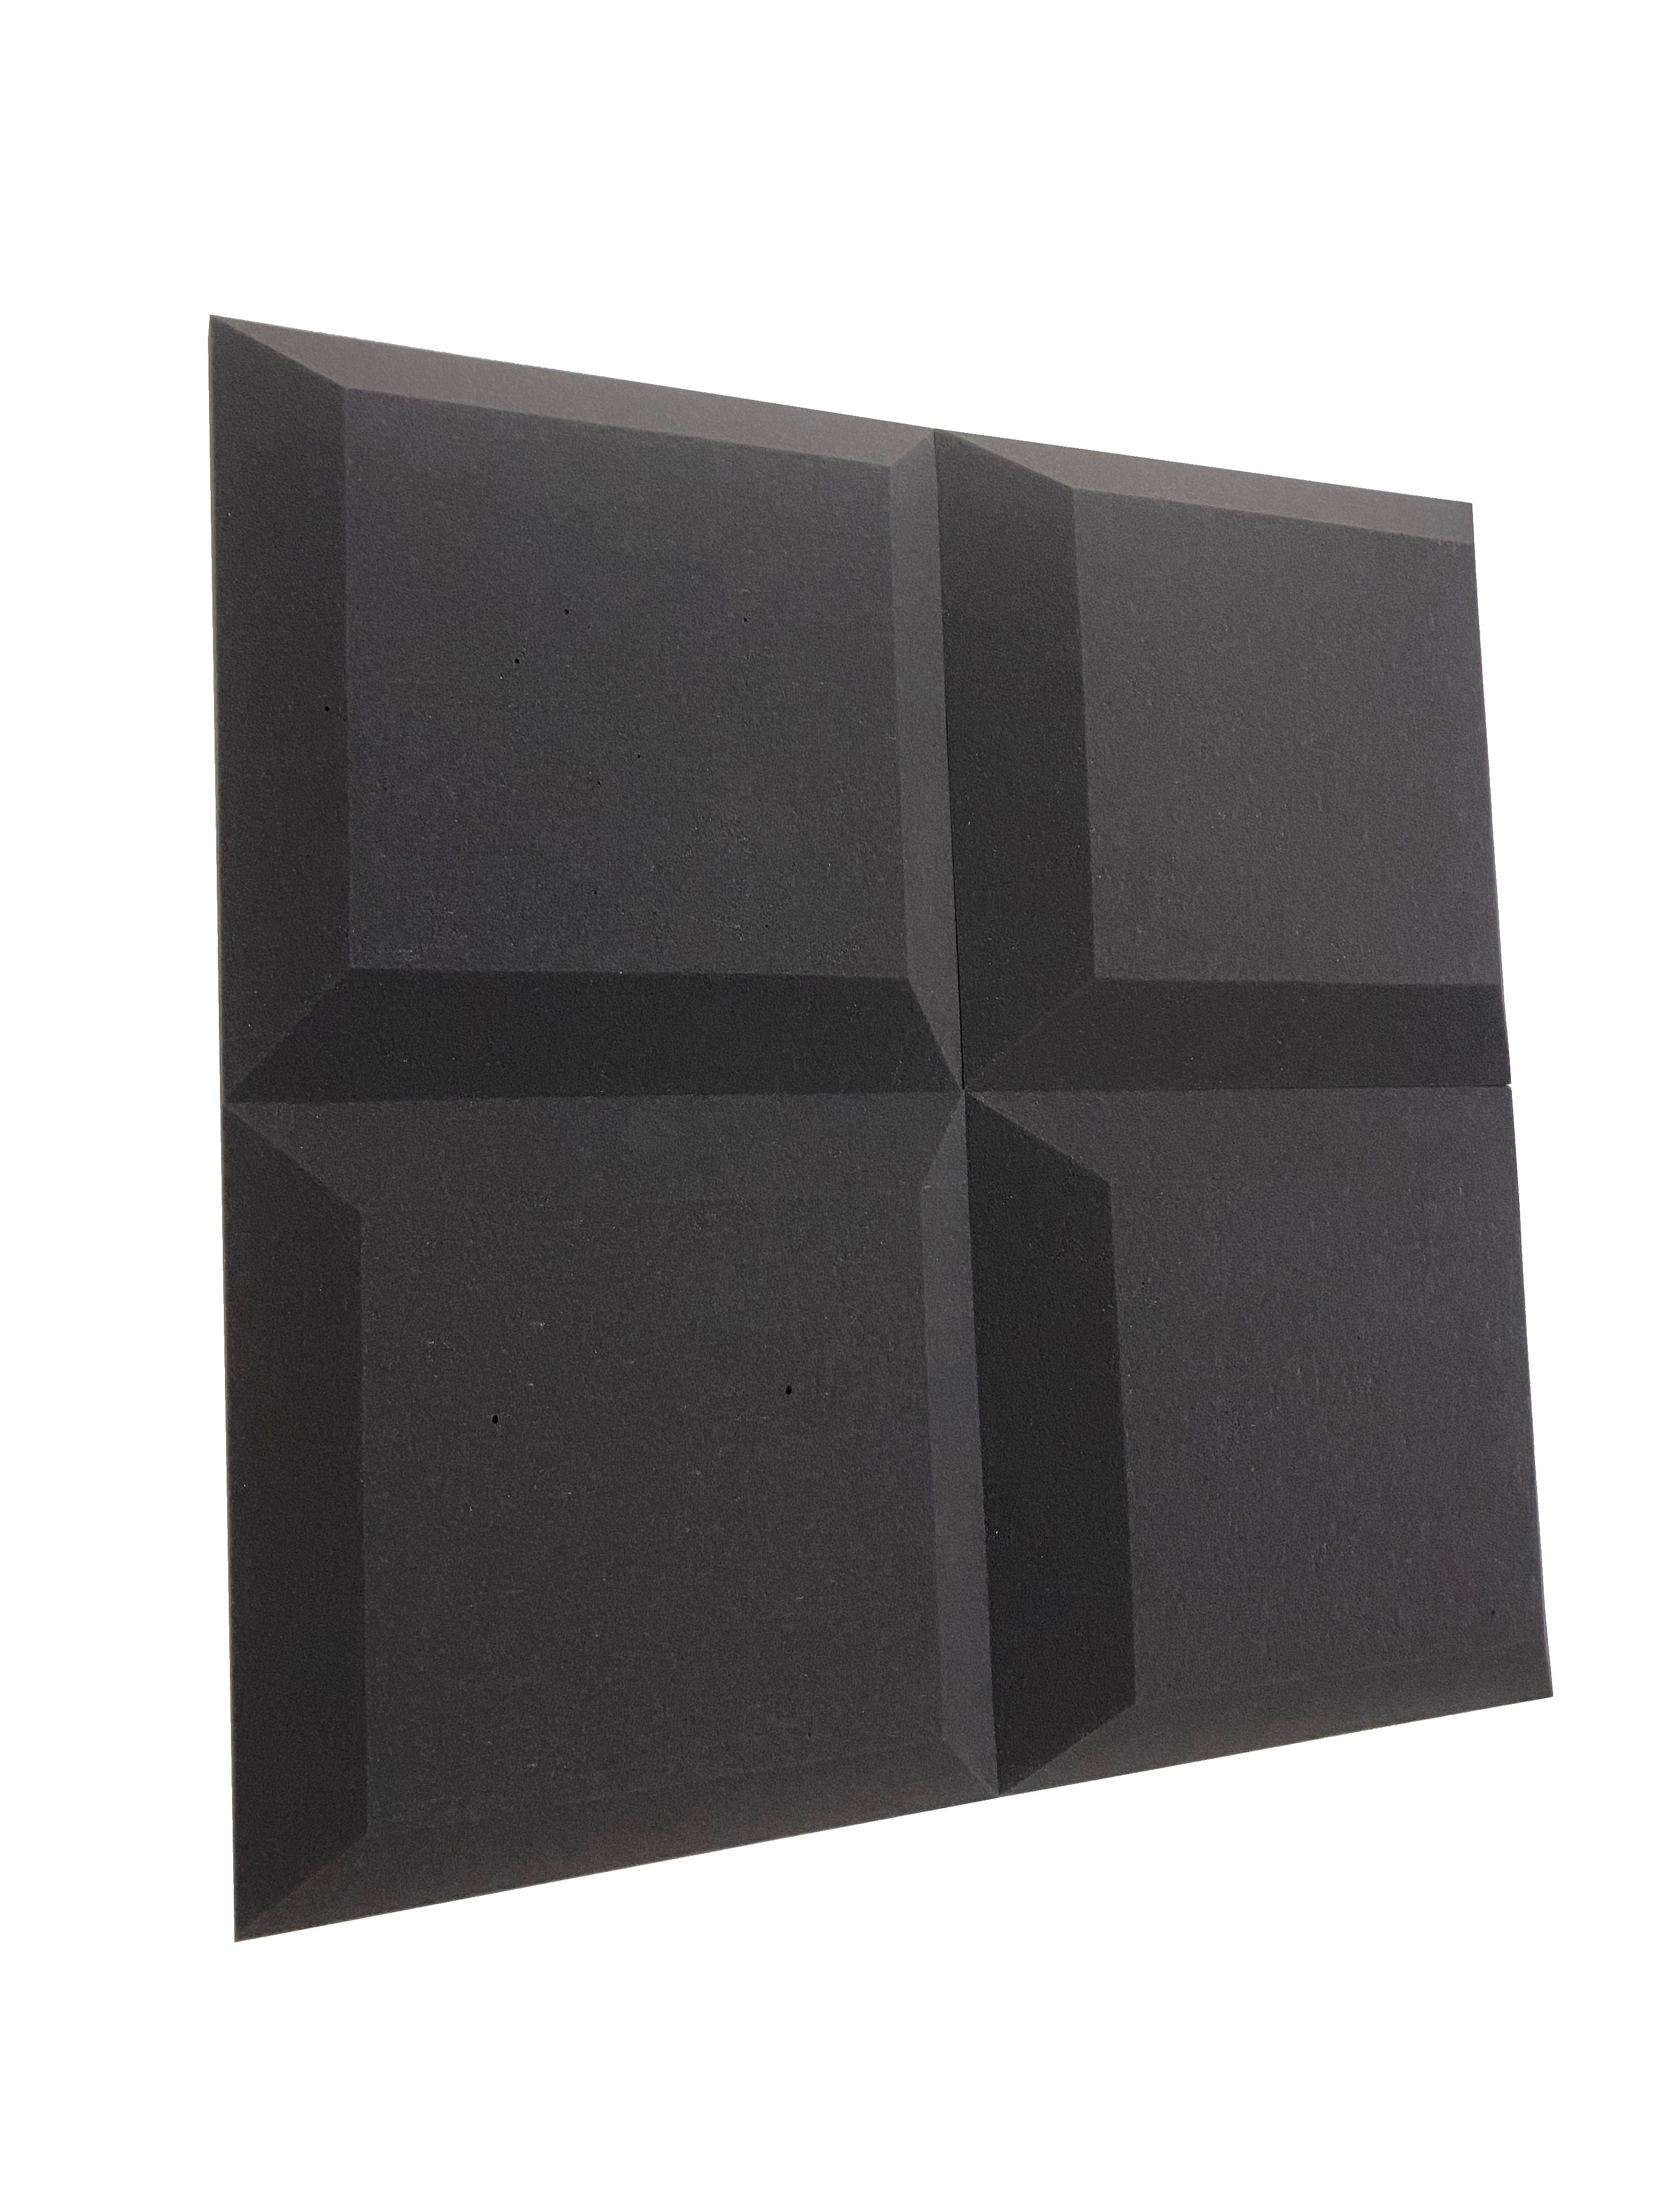 Tegular 3" Acoustic Studio Foam Tile Pack - 24 dalles, couverture de 3,48 m²